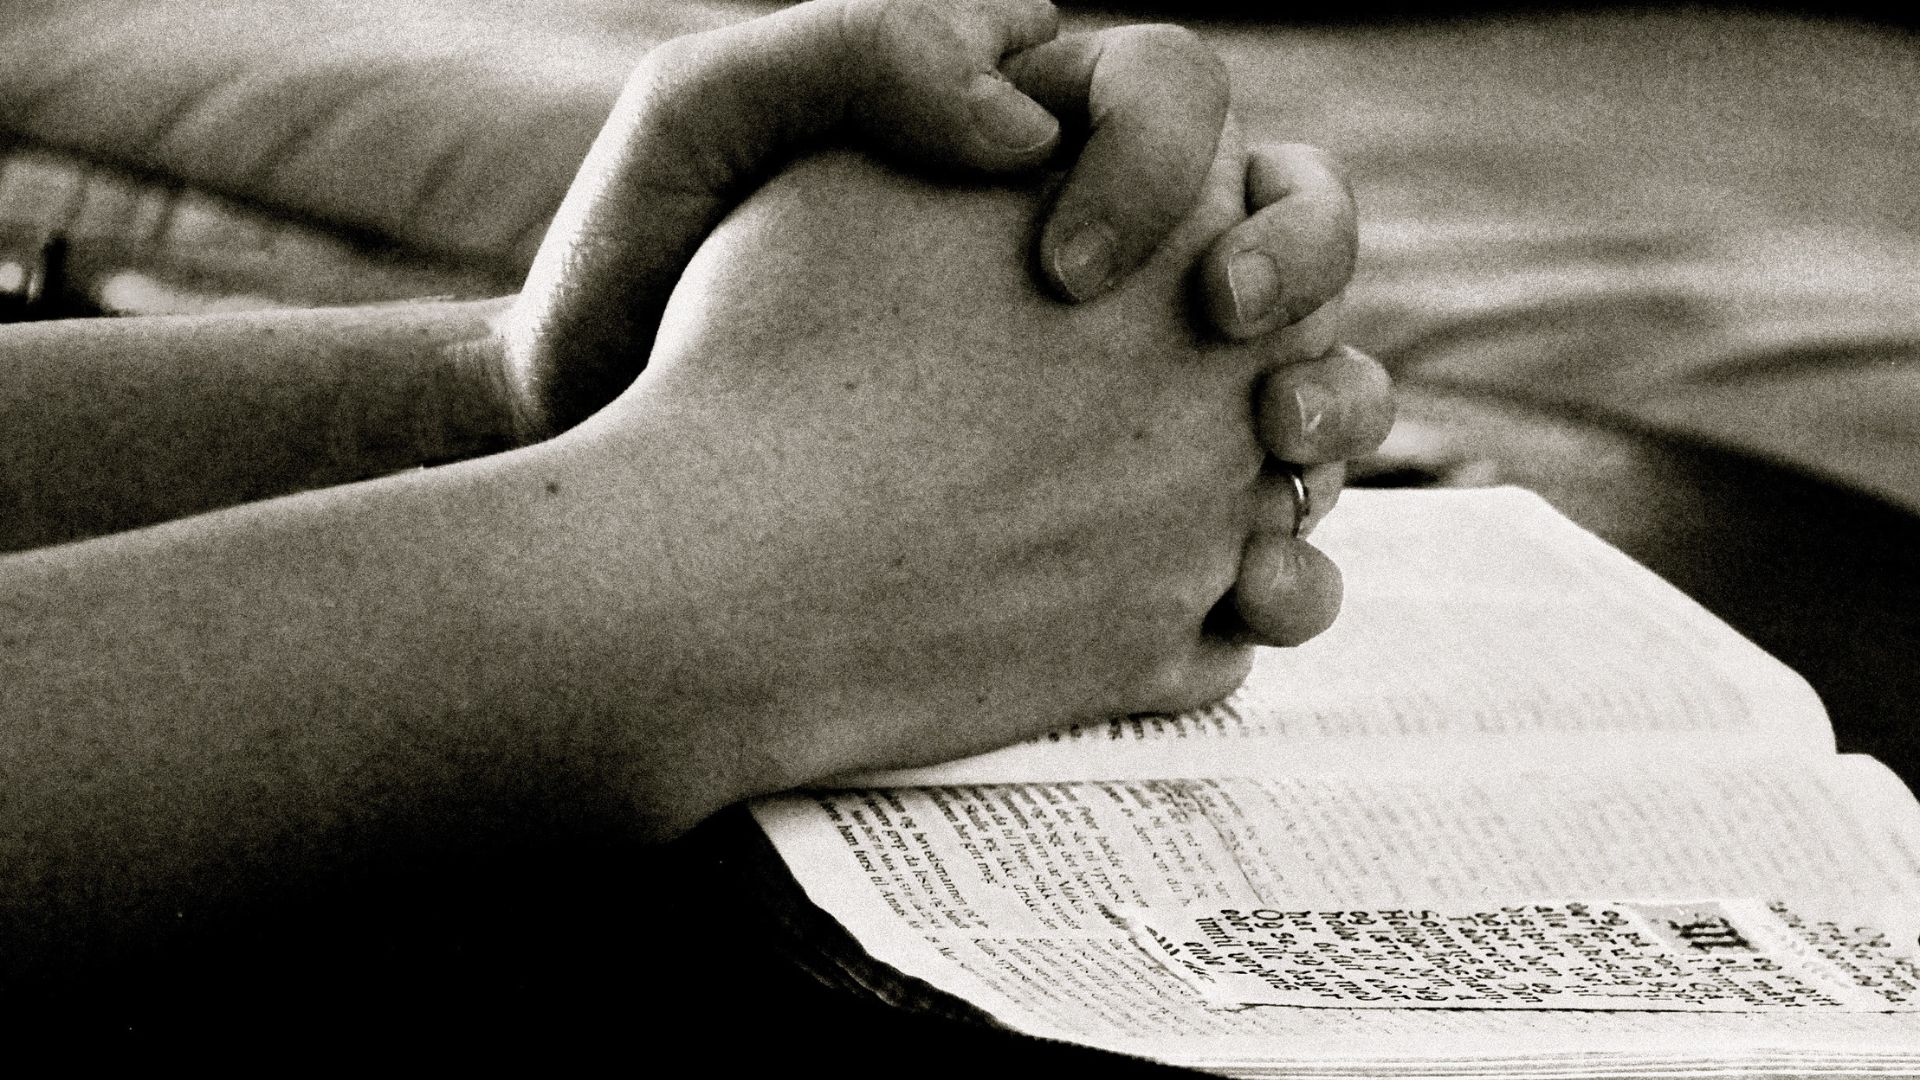 Imagem das mãos de uma pessoa em posição de oração em cima de uma Bíblia